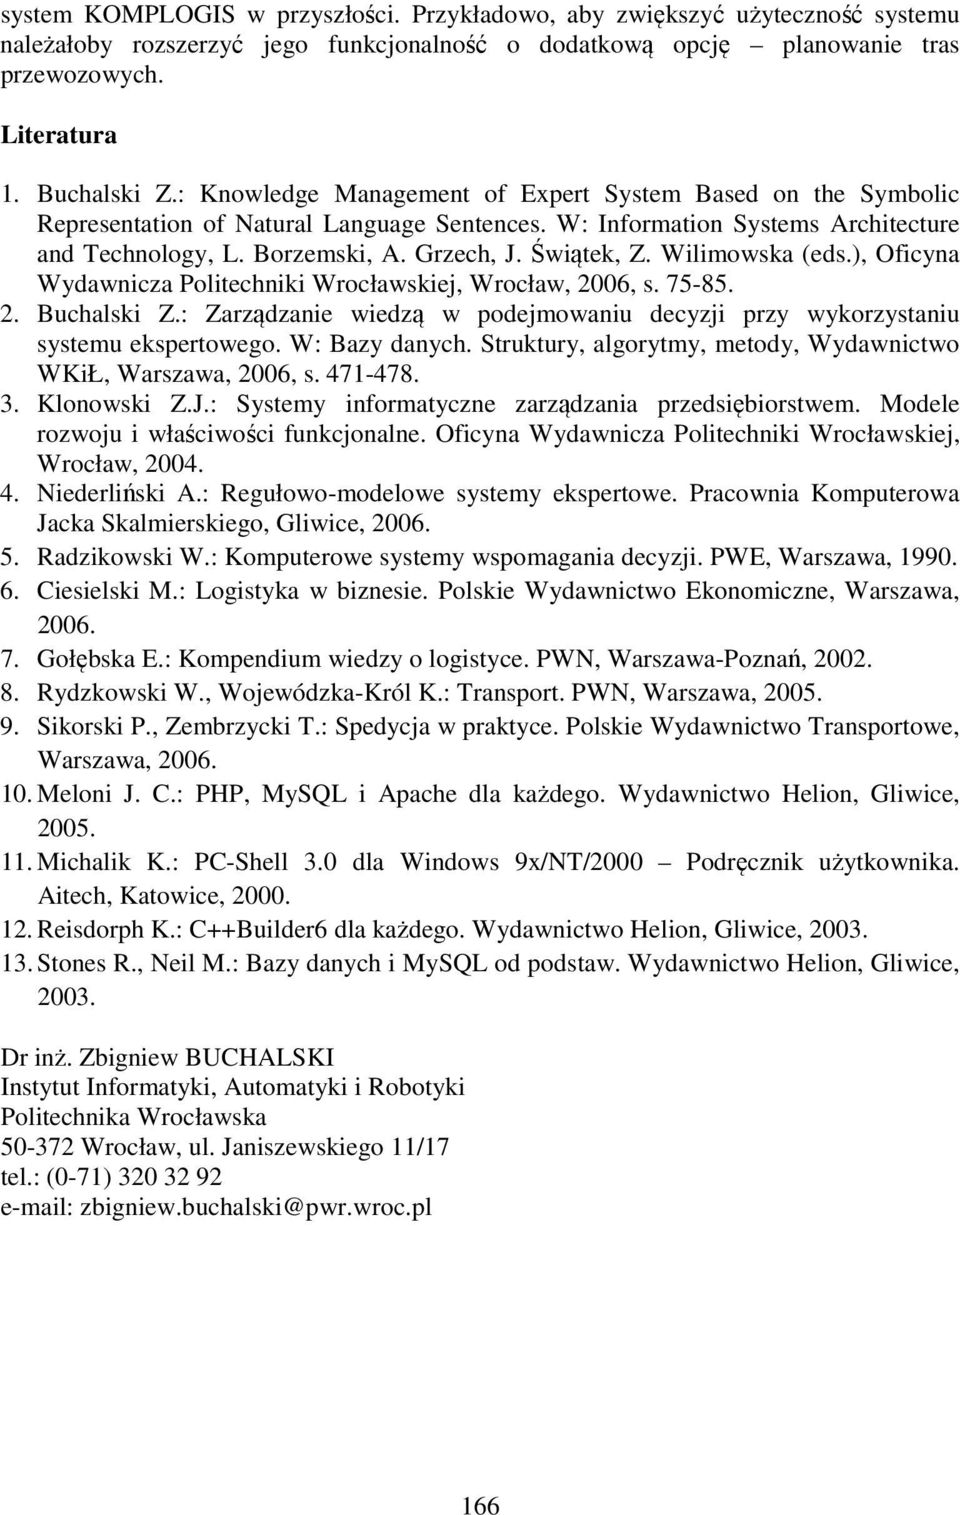 Wilimowska (eds.), Oficyna Wydawnicza Politechniki Wrocławskiej, Wrocław, 2006, s. 75-85. 2. Buchalski Z.: Zarządzanie wiedzą w podejmowaniu decyzji przy wykorzystaniu systemu ekspertowego.